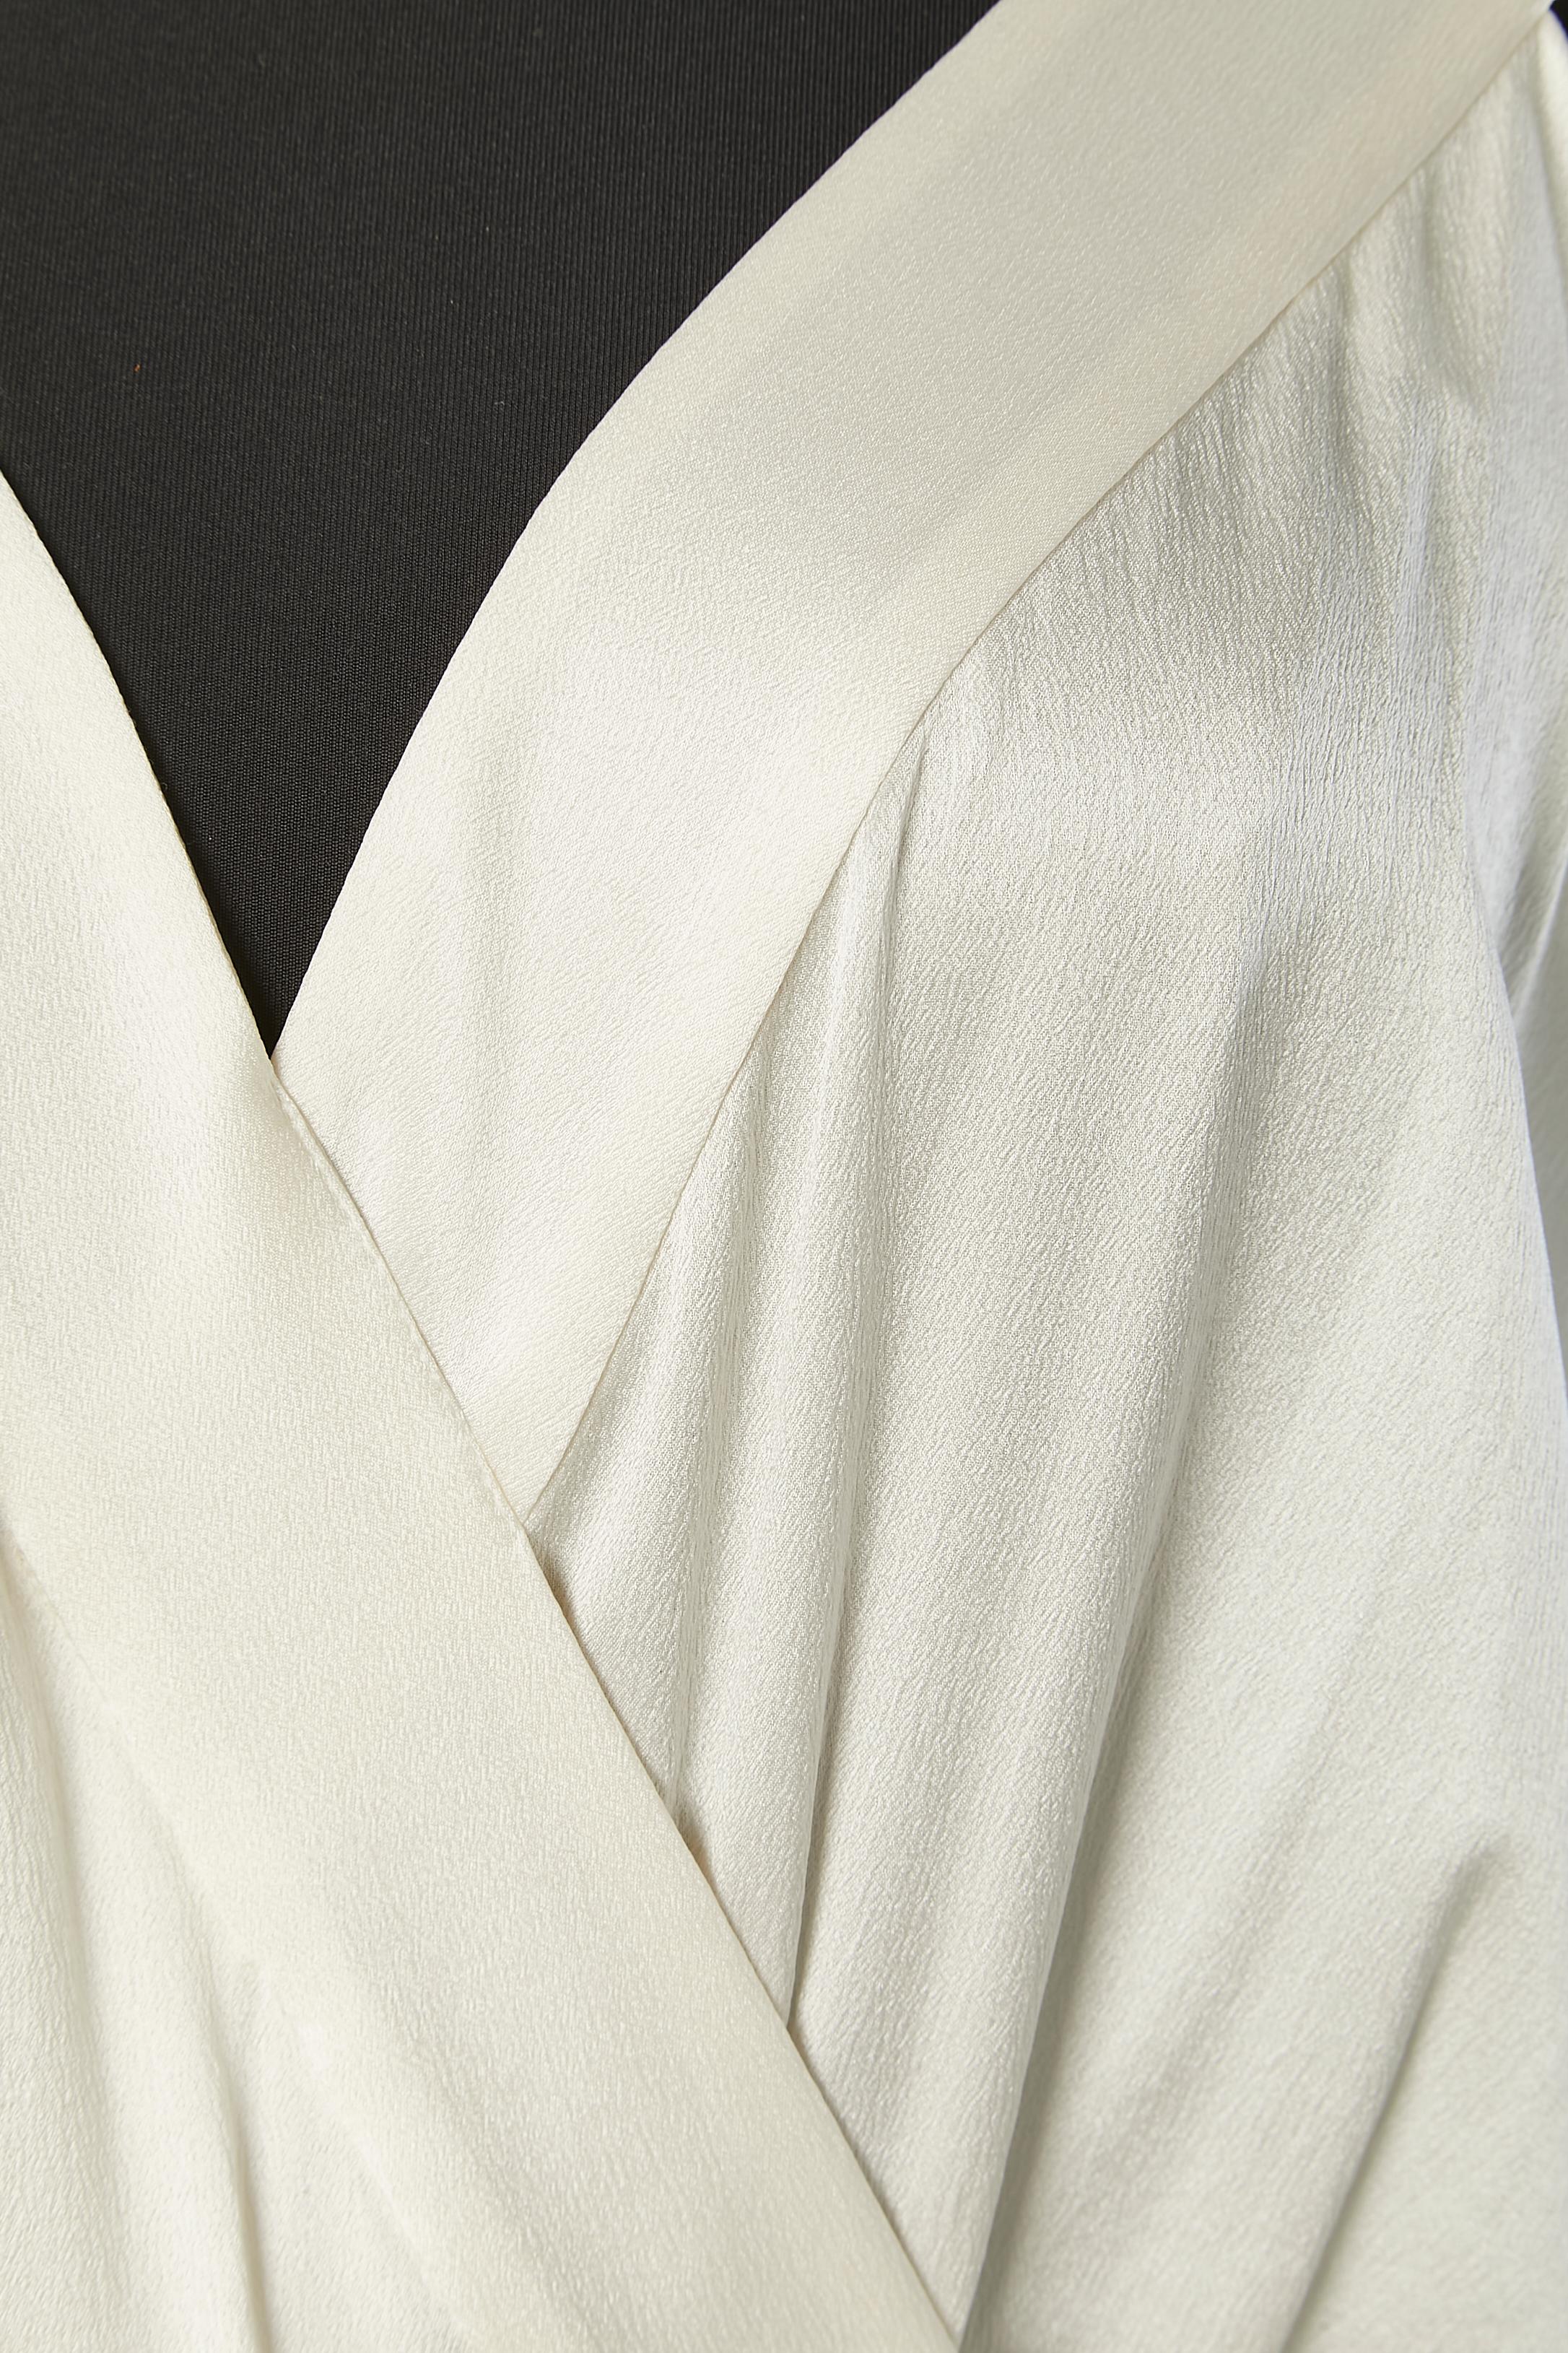 Weißes Seidencocktailkleid mit Passepartout und Seidenfransen. Schnappverschluss mit Seidenbezug auf der linken Seite. 
Größe 40 (It) 36 (Fr) aber passt M 